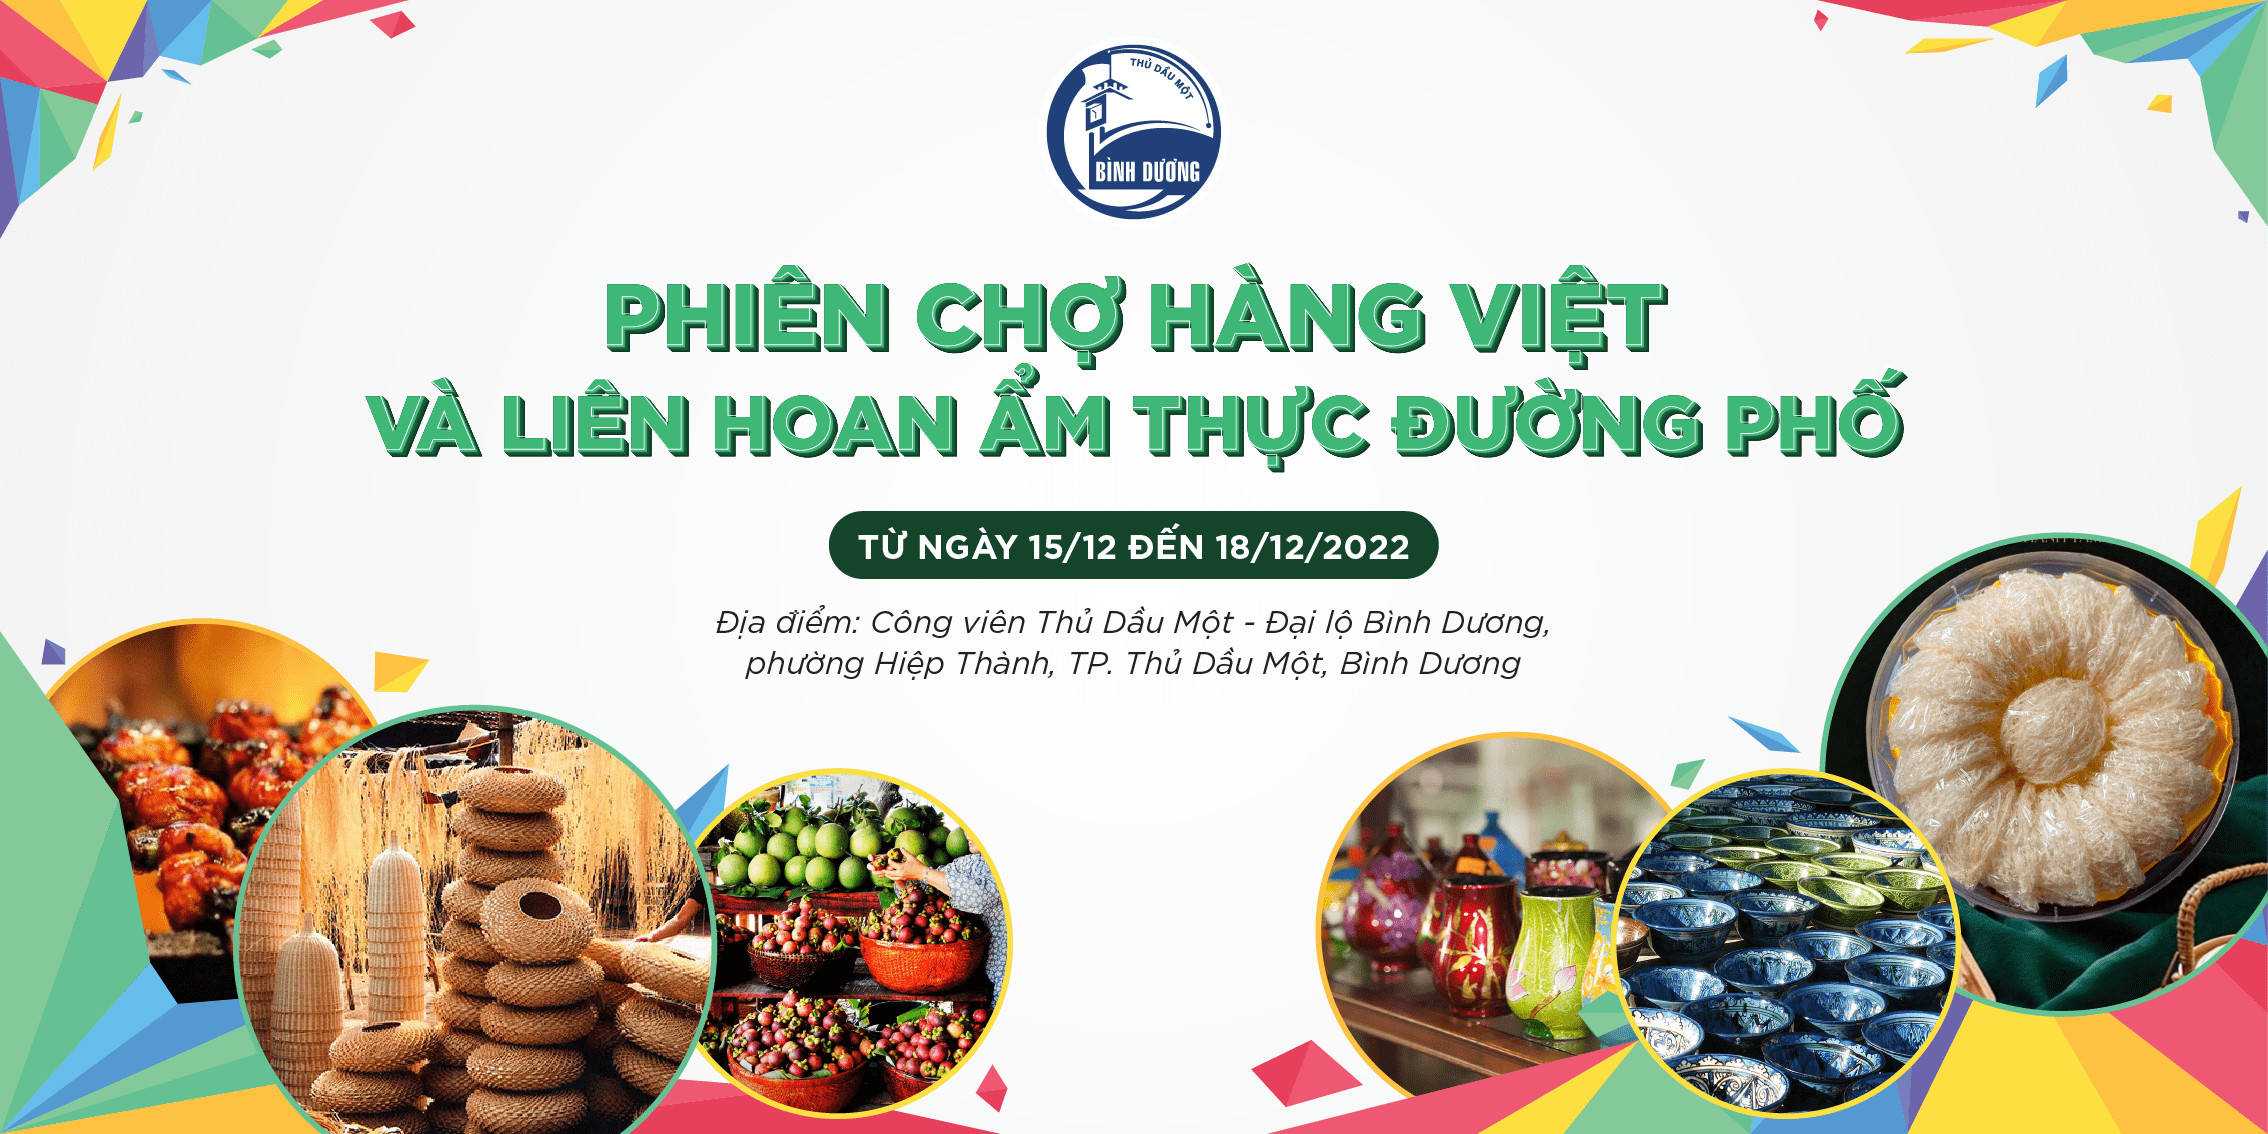 Mời tham gia chương trình “Phiên chợ hàng Việt và Liên hoan Ẩm thực đường phố” tỉnh Bình Dương năm 2022